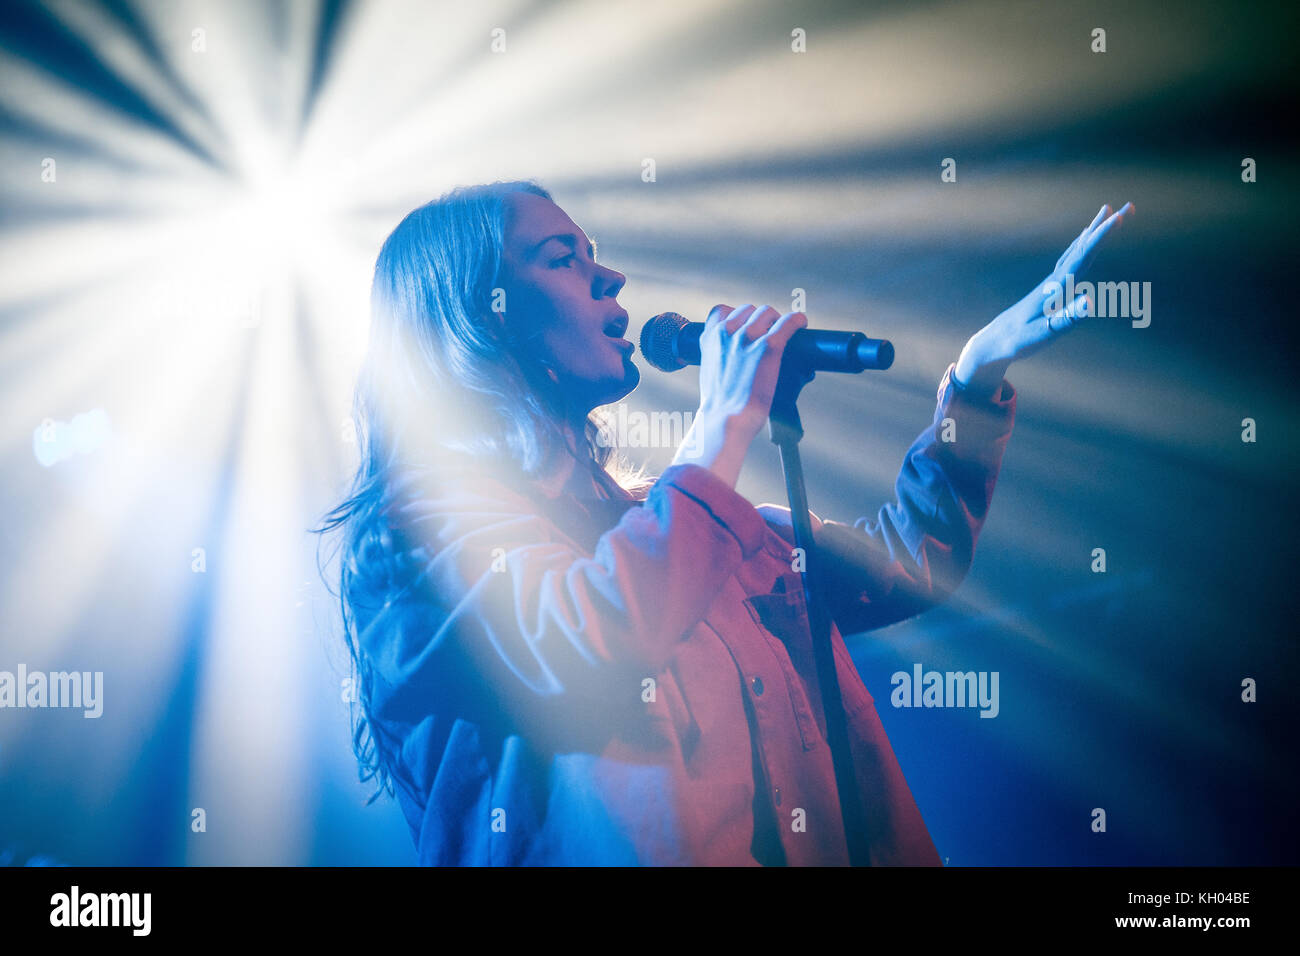 Norvège, Oslo - 9 novembre 2017. La chanteuse norvégienne, auteur-compositeur et musicien dream pop anna du nord effectue un concert live au parkteatret à Oslo. (Photo crédit : gonzales photo - tord litleskare). Banque D'Images